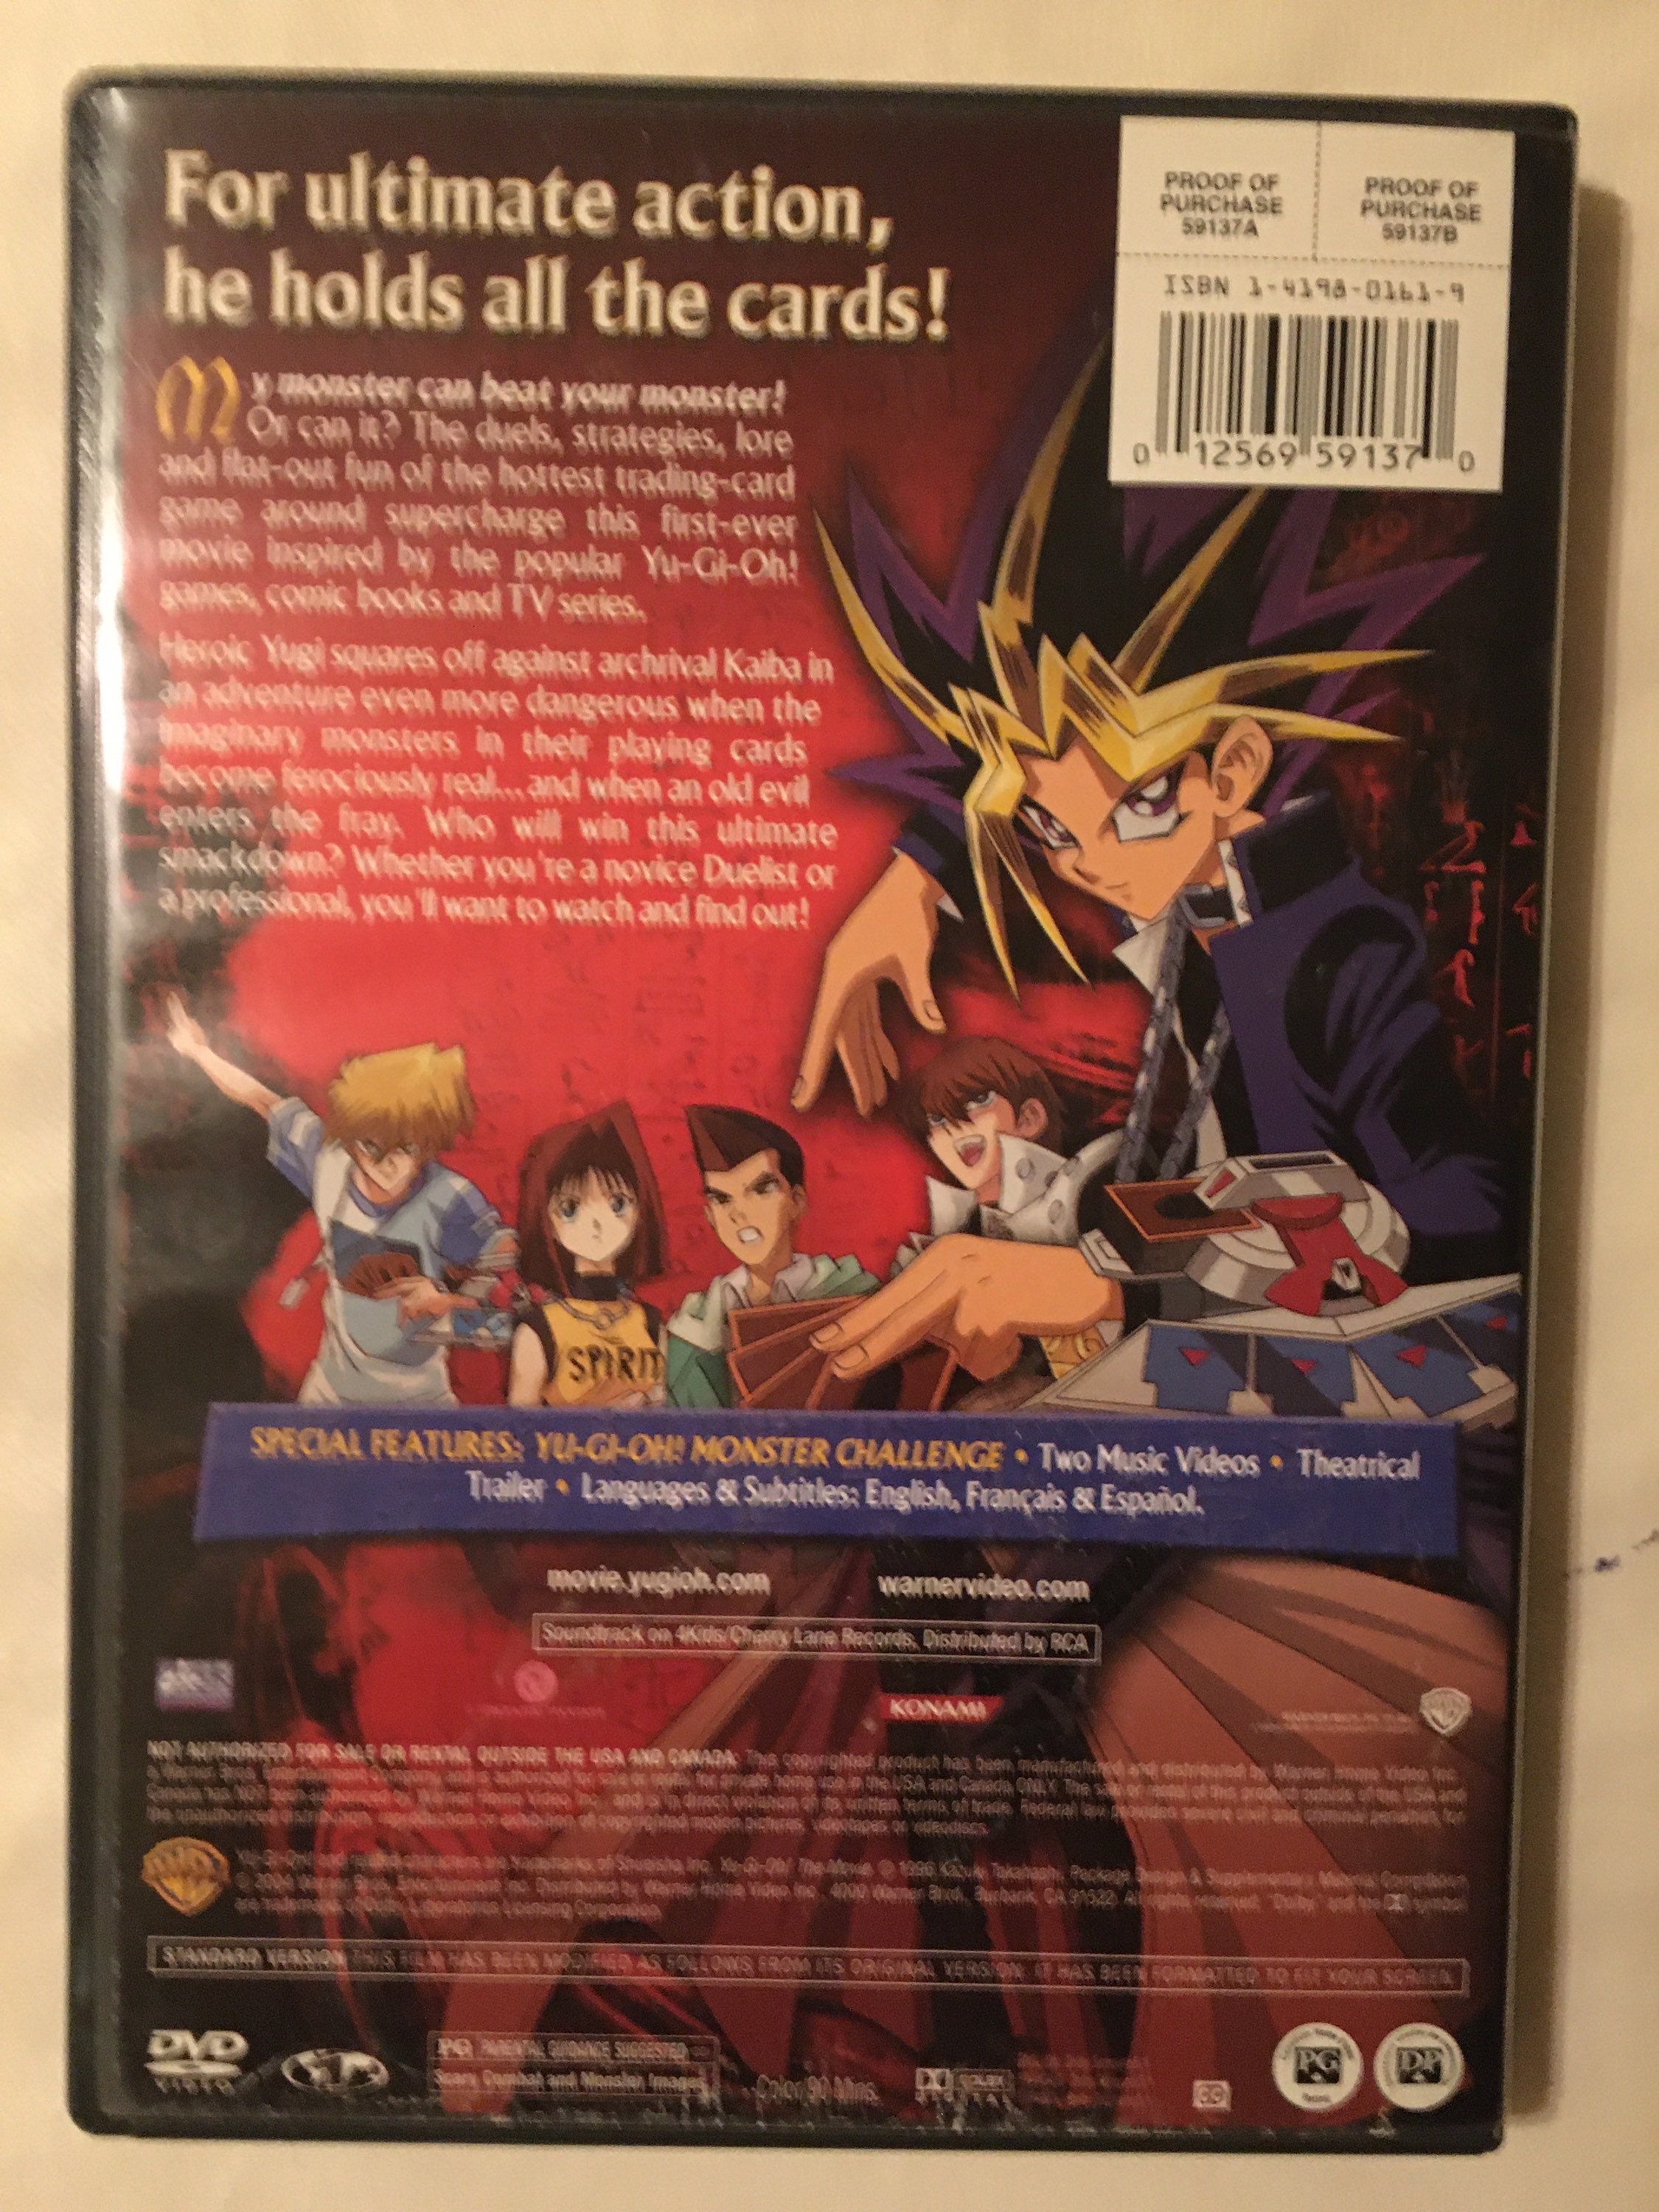 Exclusivo: FlashStar Lança Yu-Gi-Oh! 5D's em DVD (AT)